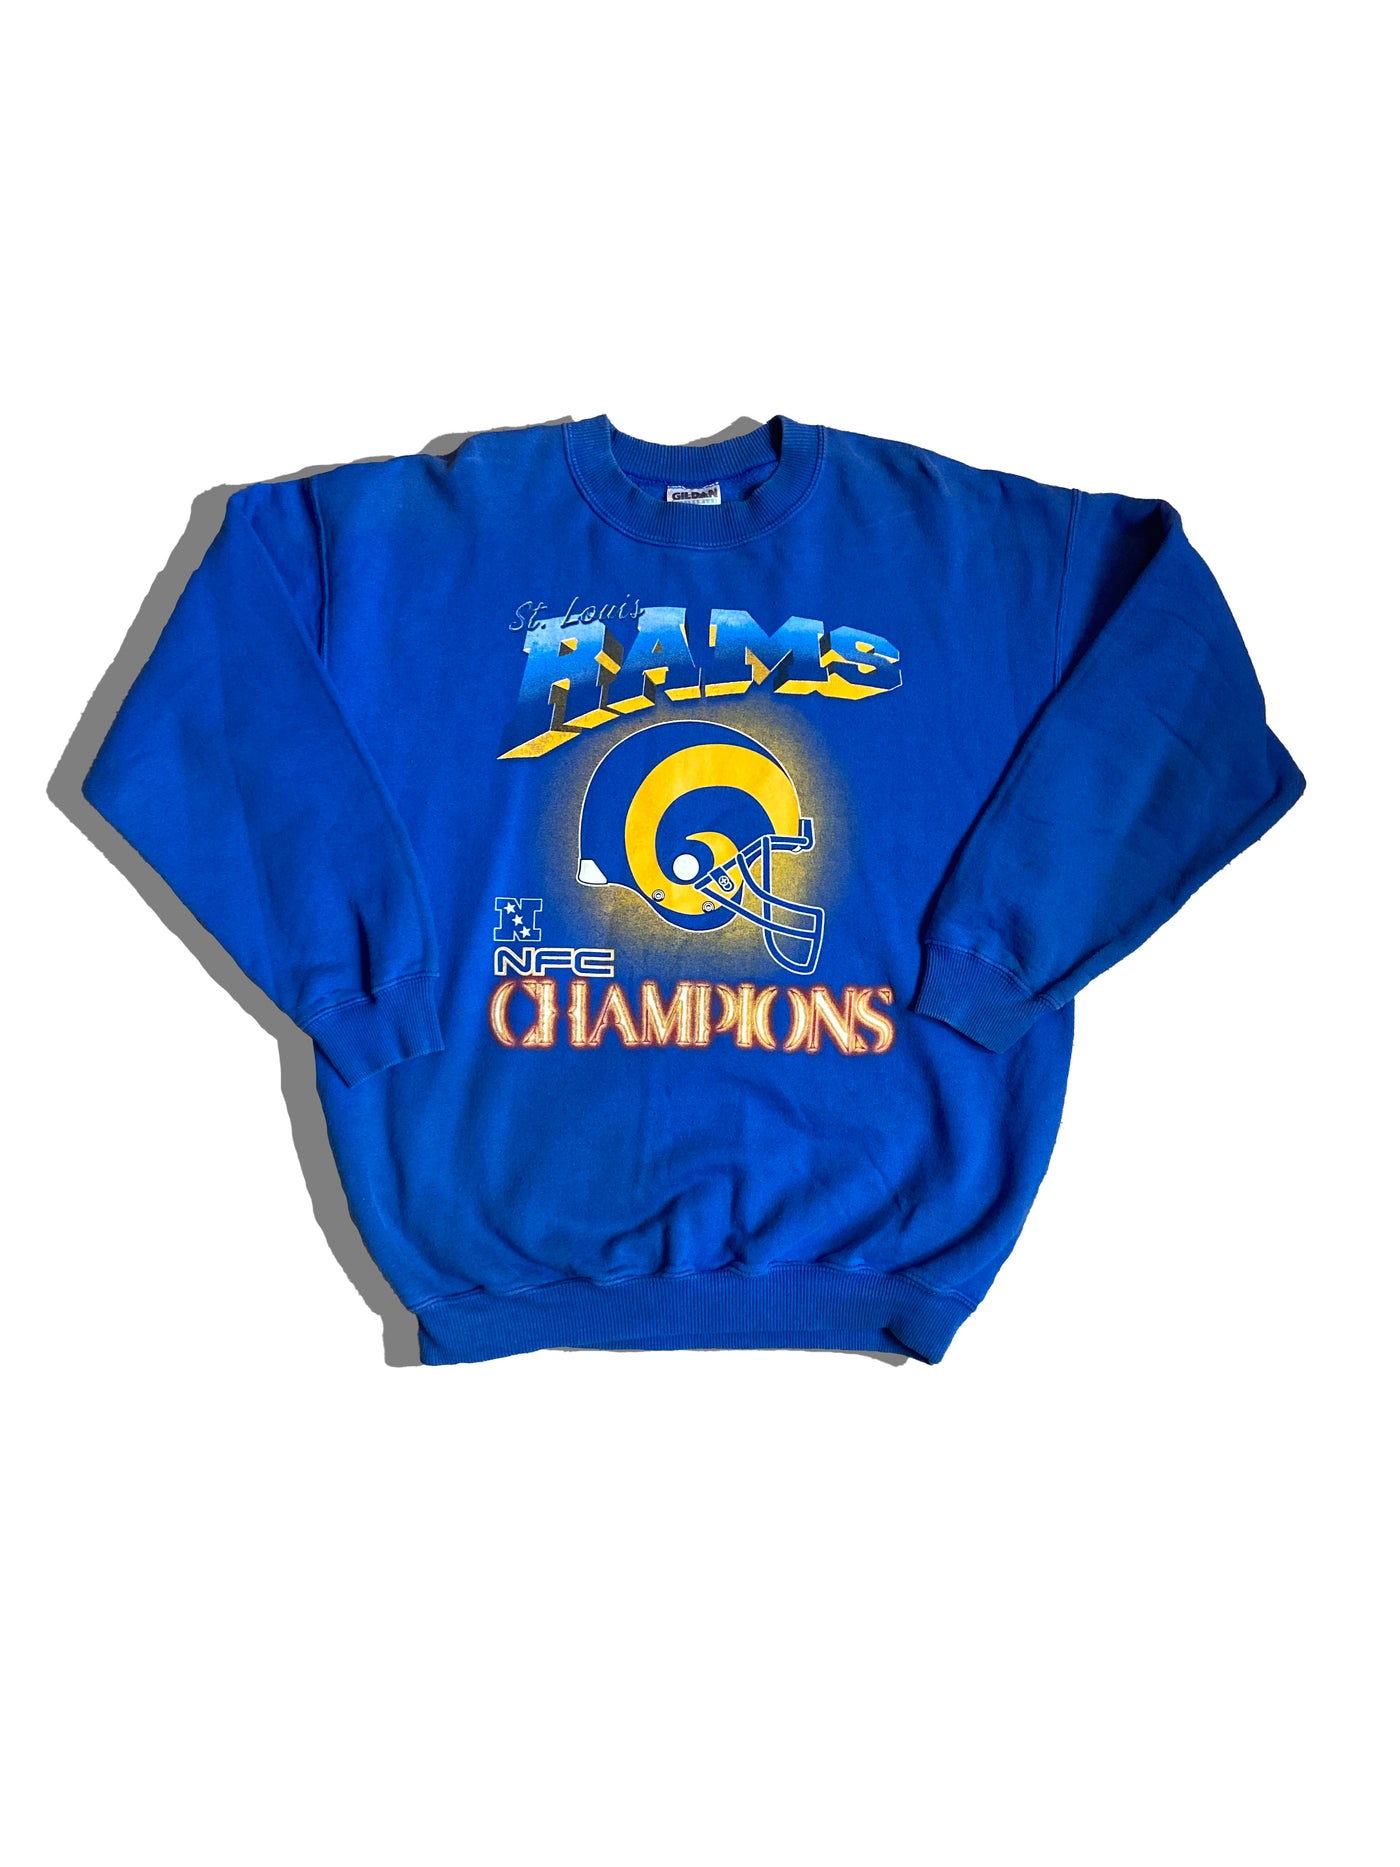 Vintage 90's St. Louis Rams NFC Champions Crewneck